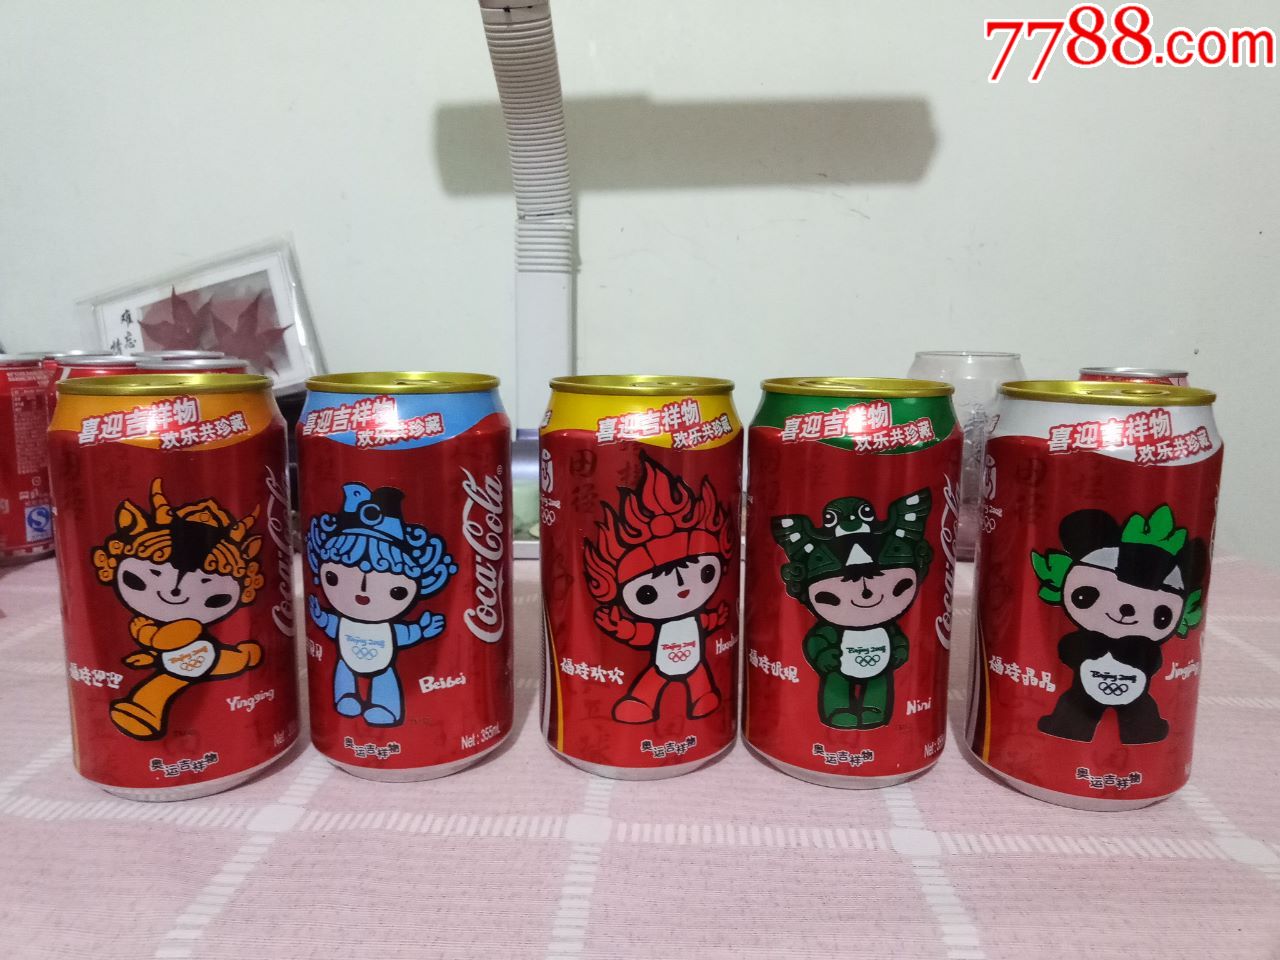 可口可乐新年礼物08奥运吉祥物福娃纪念罐一套5罐空罐